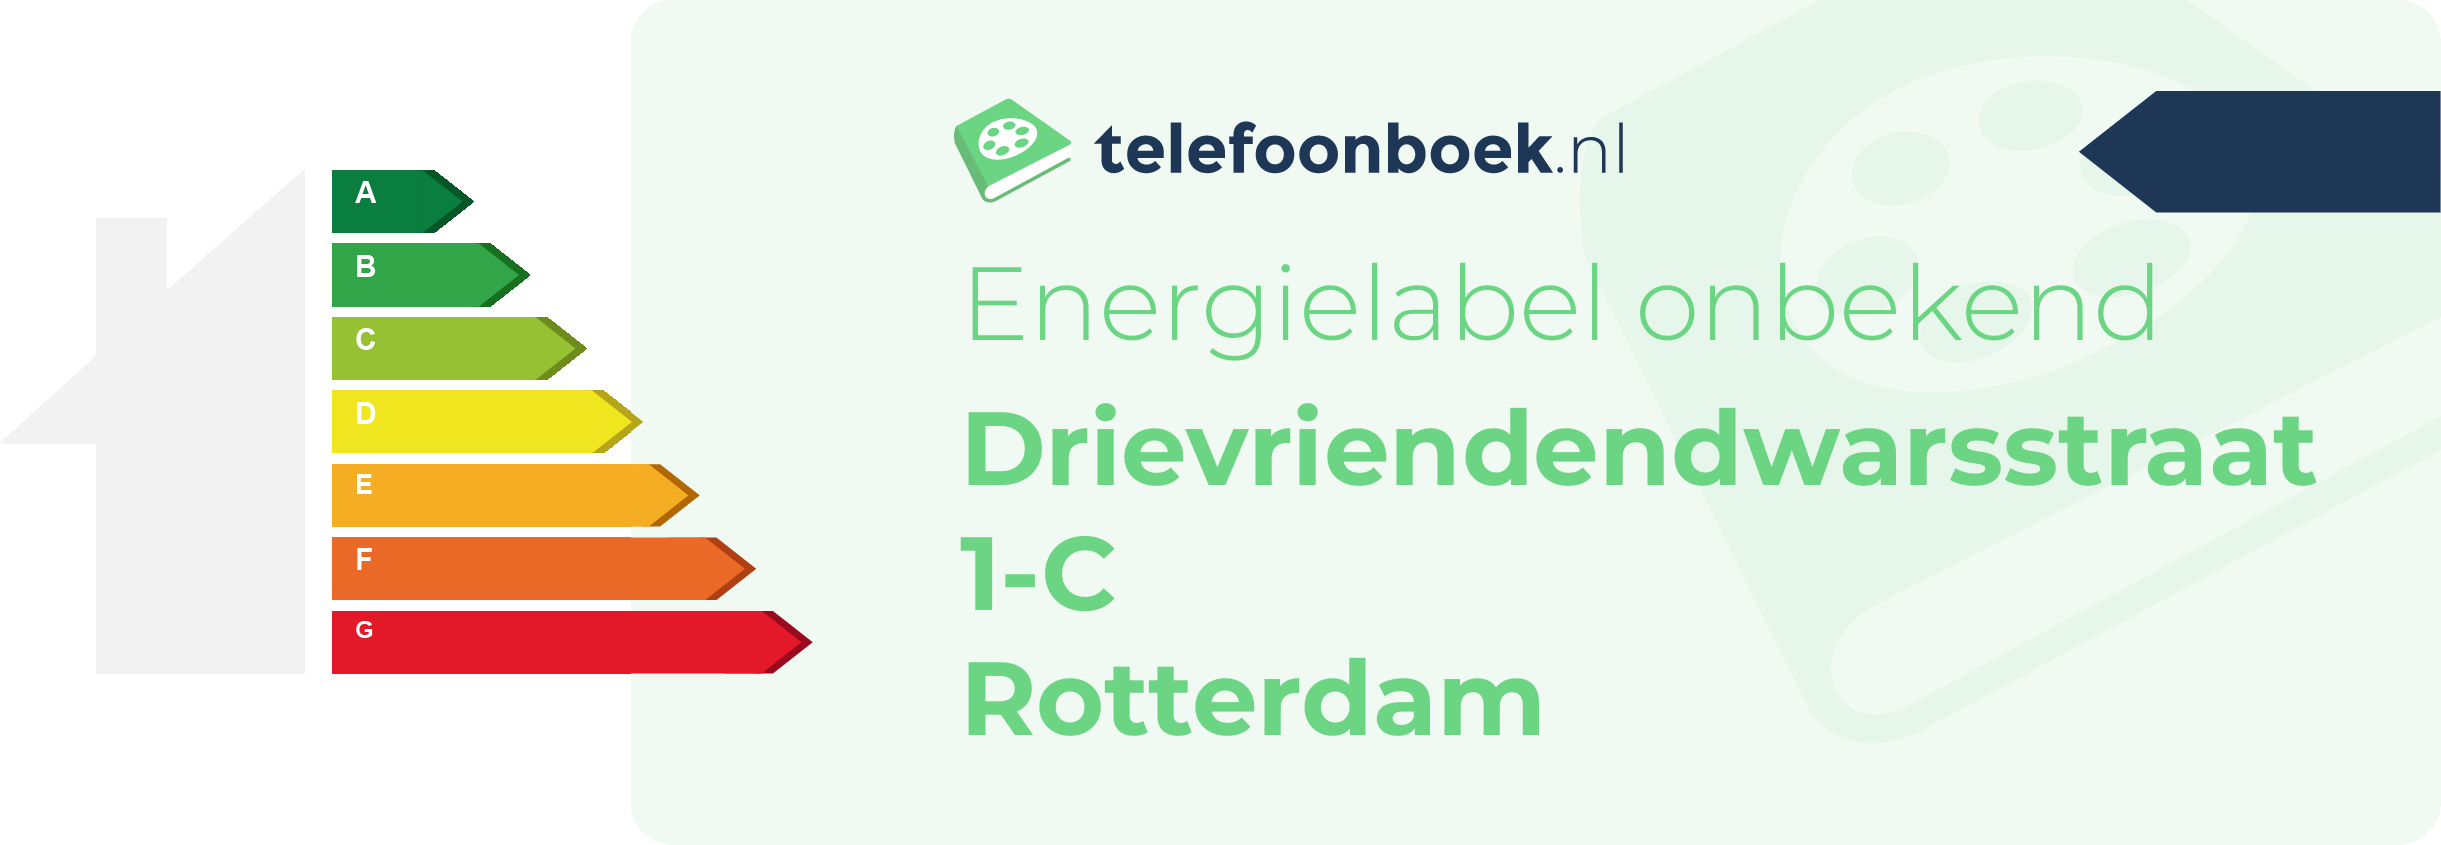 Energielabel Drievriendendwarsstraat 1-C Rotterdam